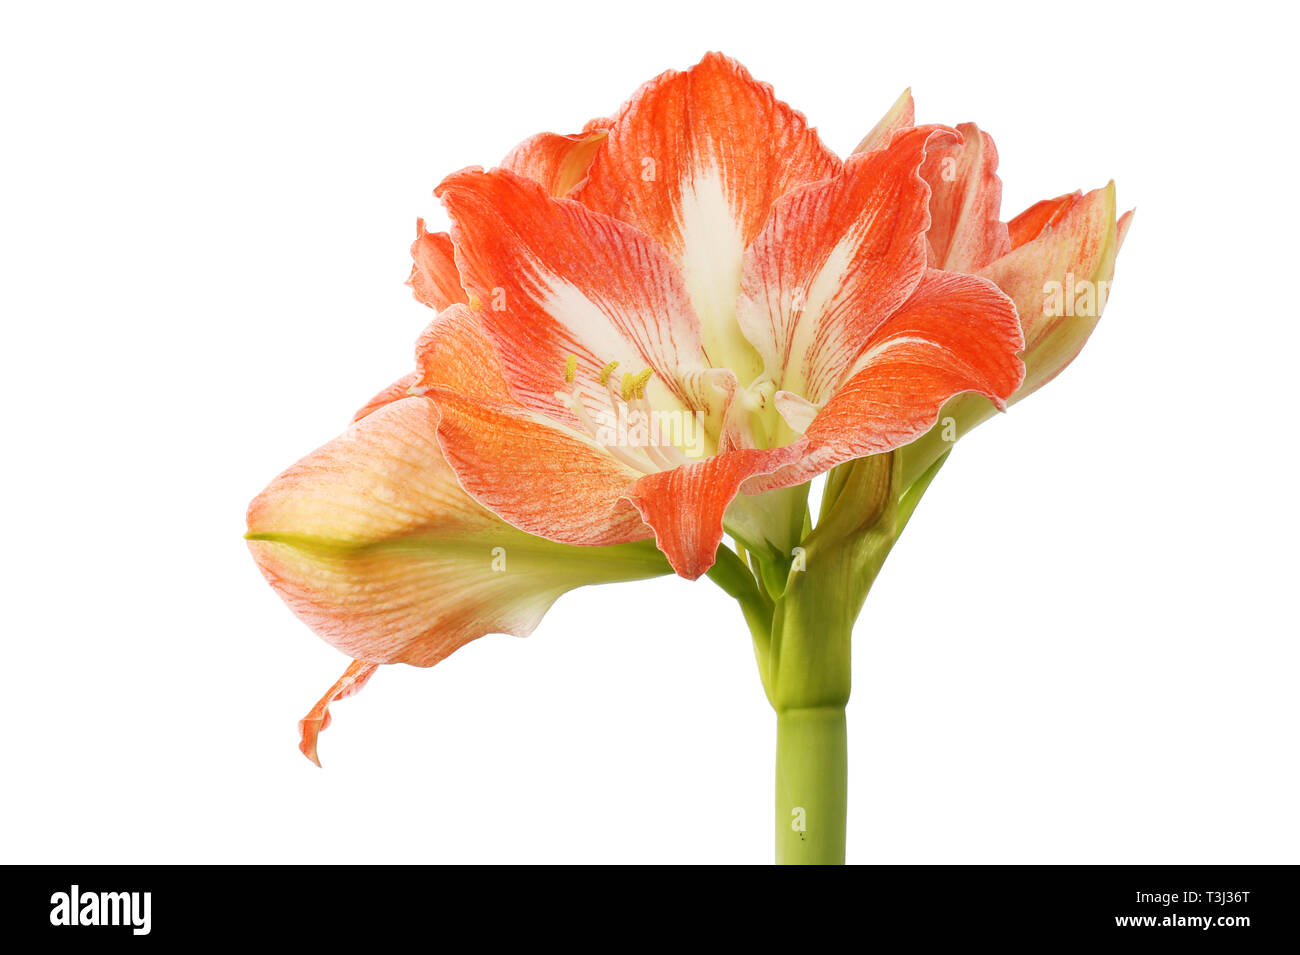 Amaryllis flower isolated against white Stock Photo